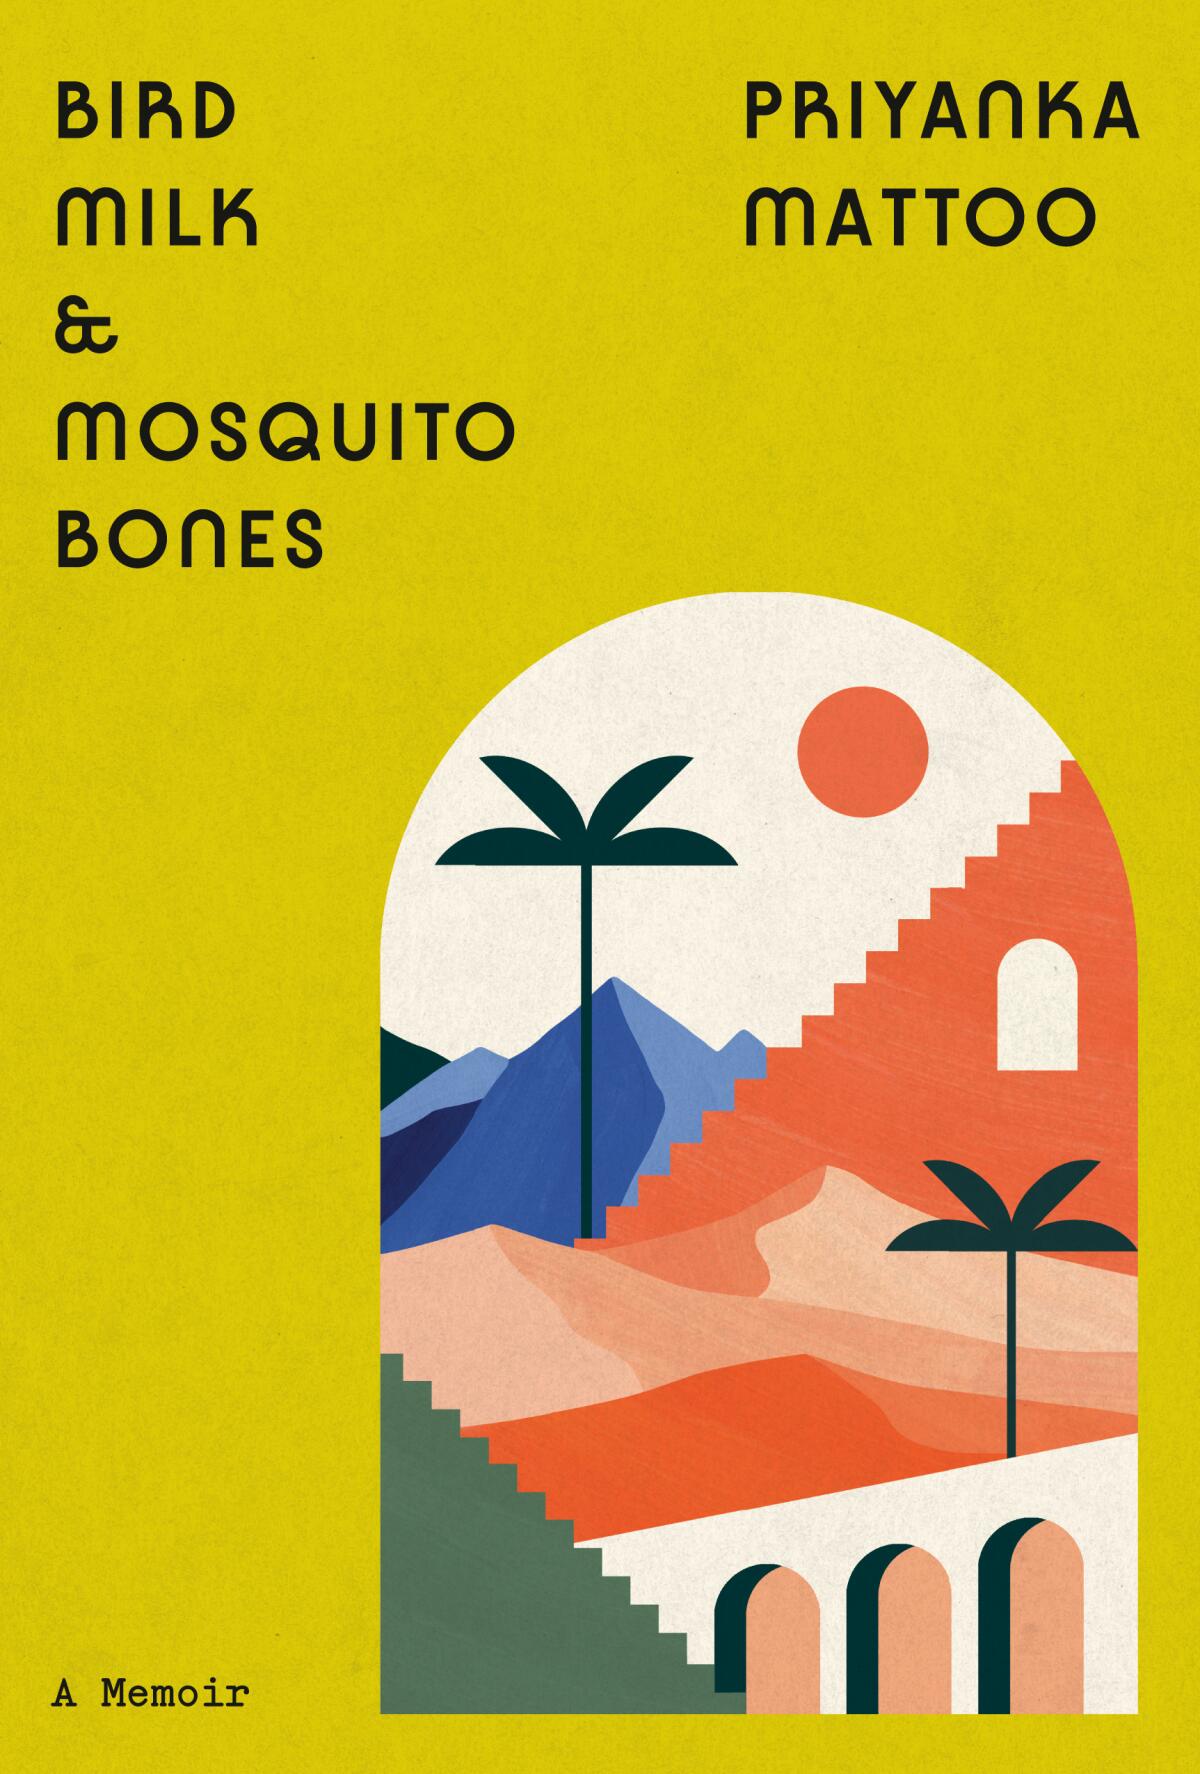 "Bird Milk & Mosquito Bones" by Priyanka Mattoo